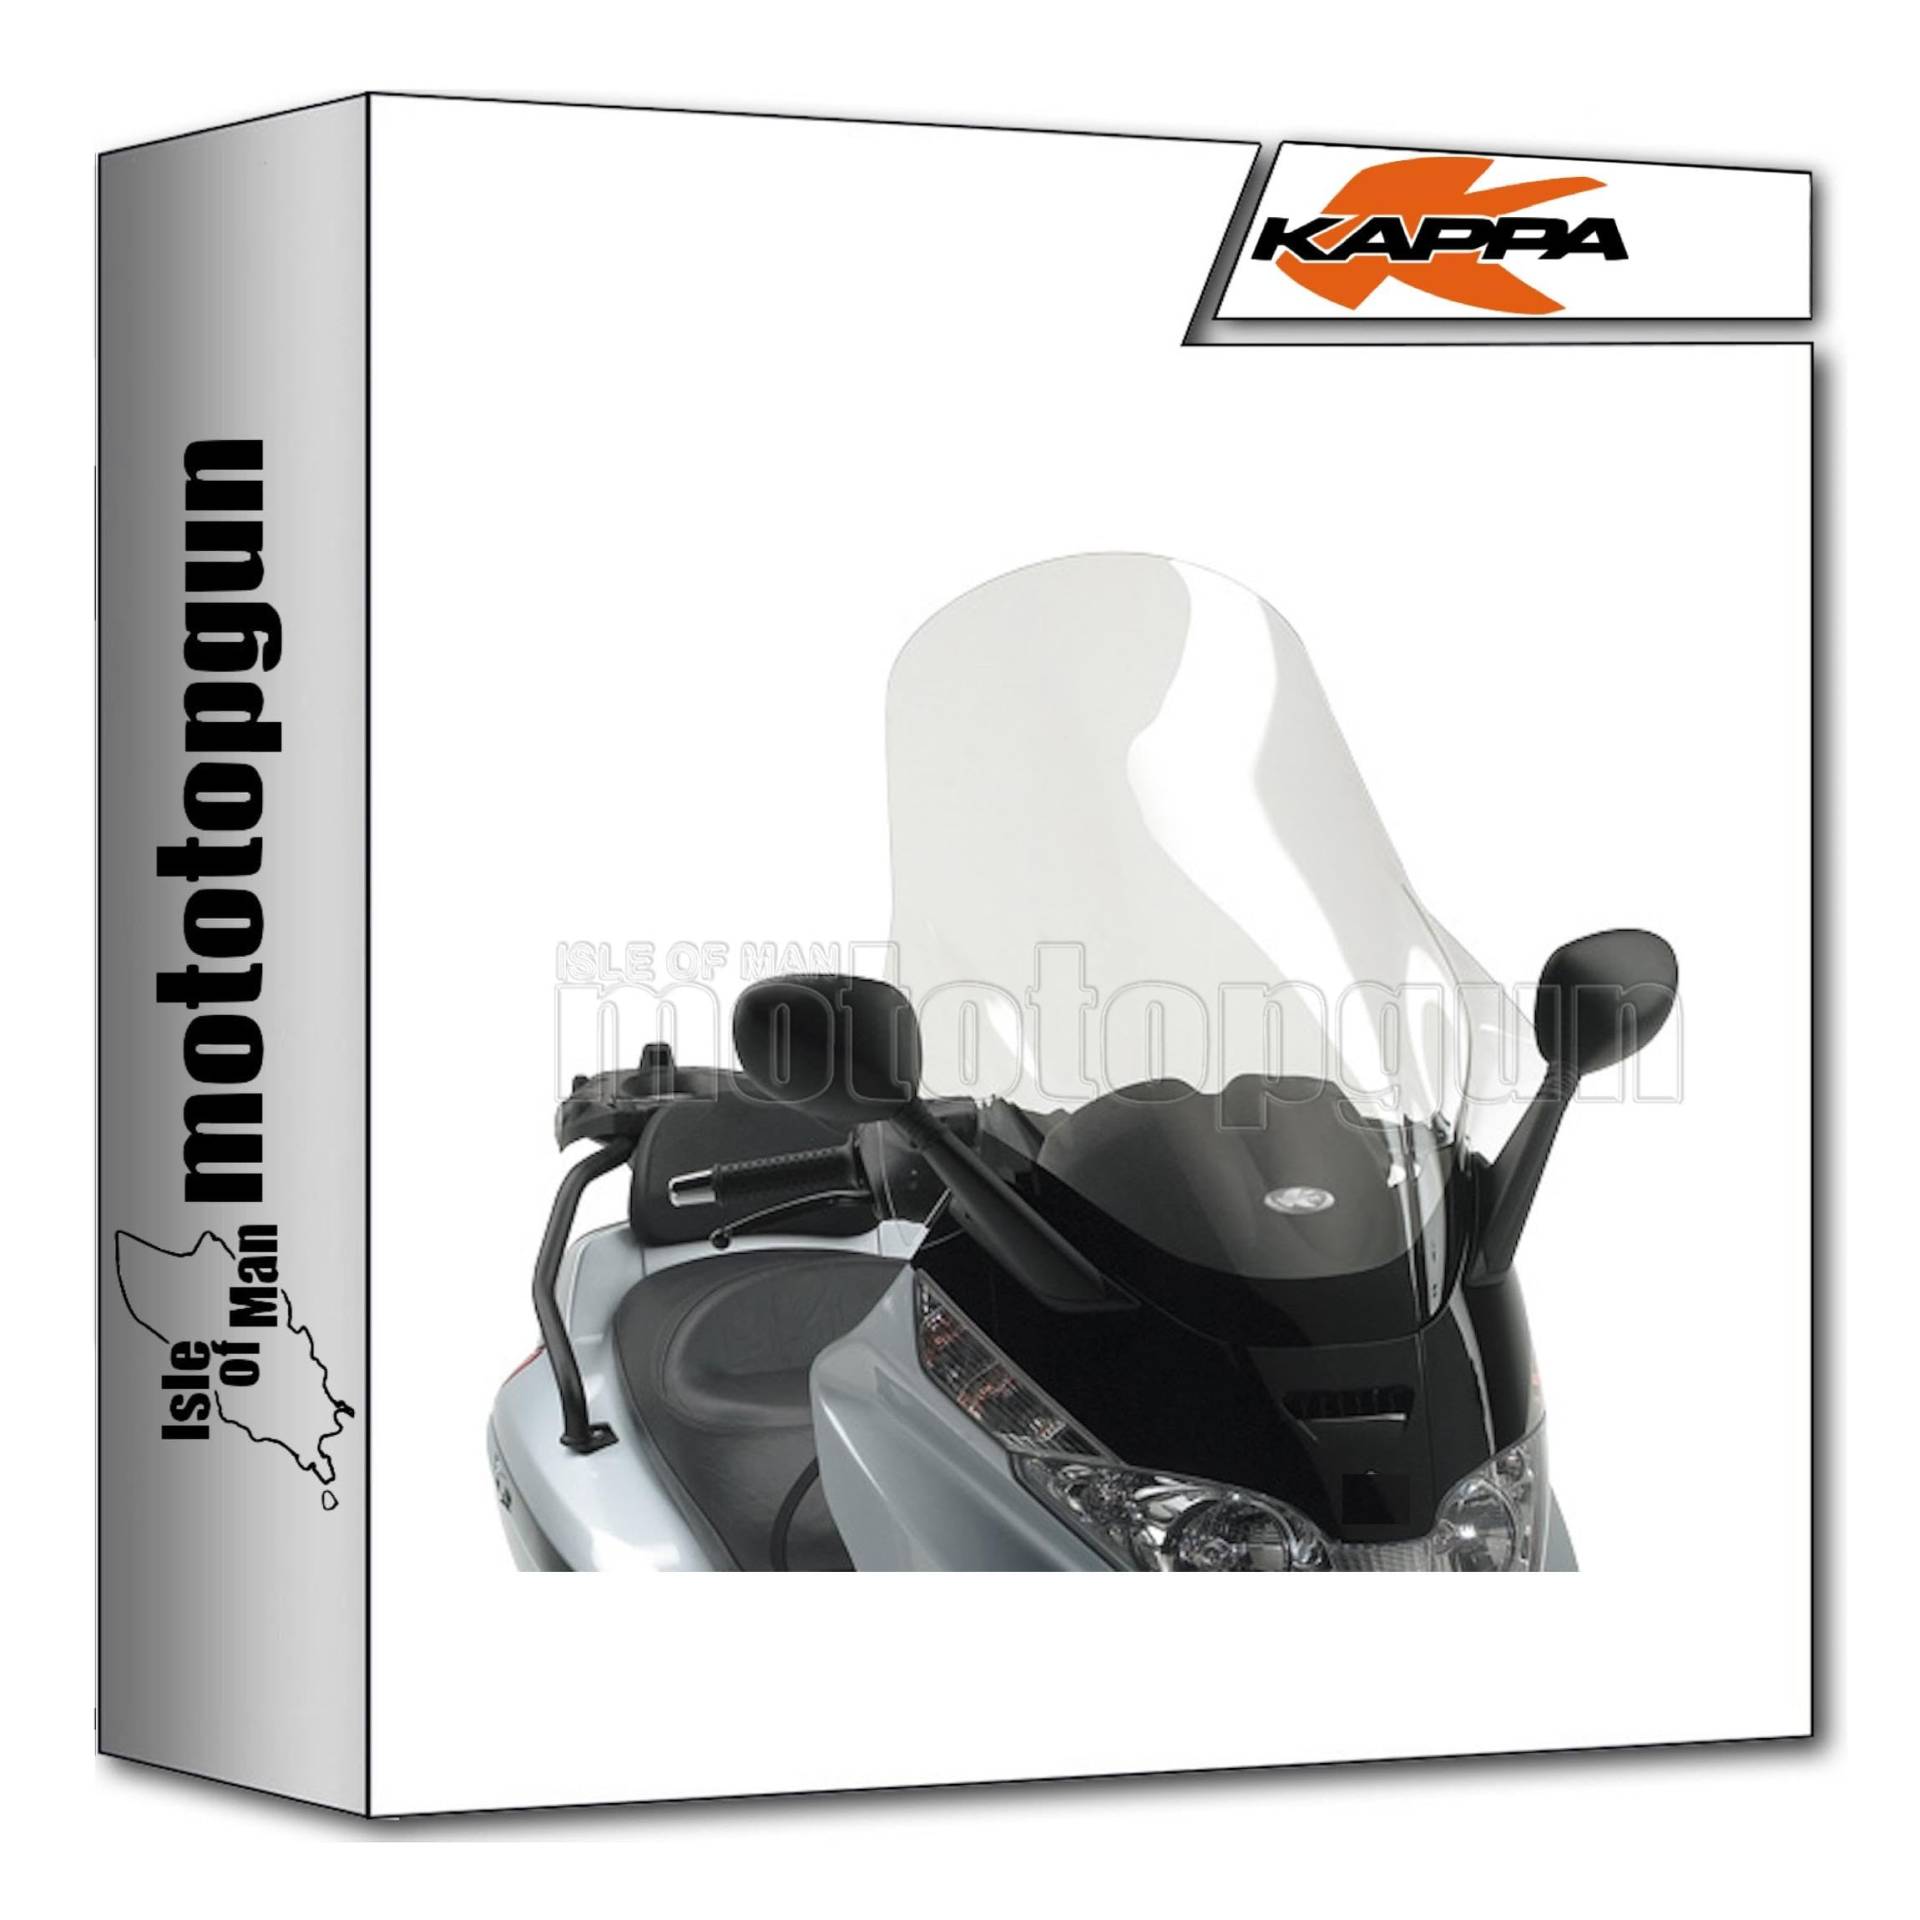 kappa windschild kompatibel mit piaggio x8 200 250 400 2004 2005 2006 2007 2008 2009 2010 mototopgun von MOTOTOPGUN